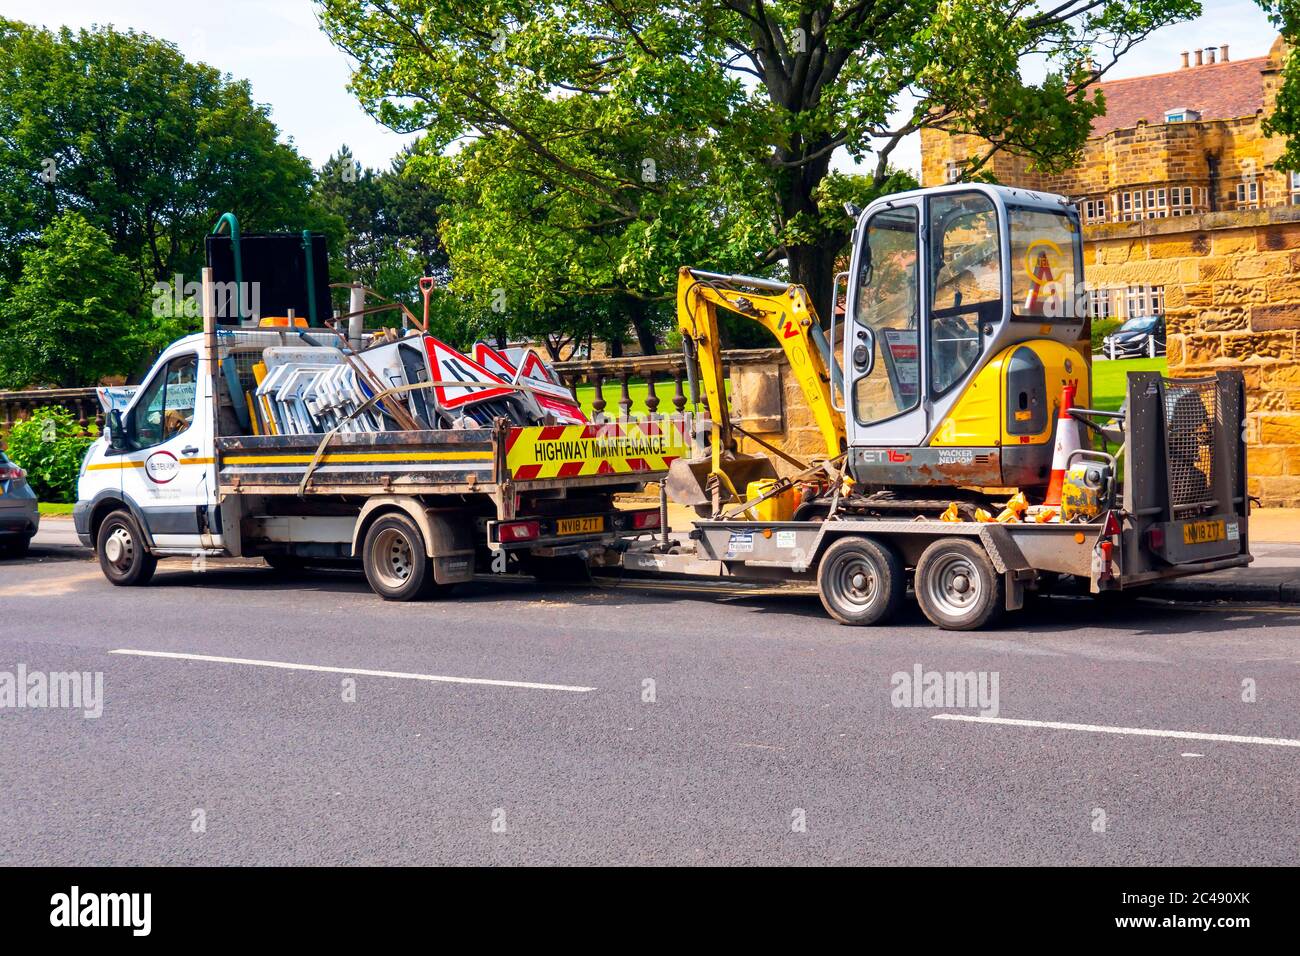 ELTEL UK, camion e rimorchi per la riparazione stradale con miniescavatore disponibili per qualsiasi servizio di pubblica utilità Foto Stock